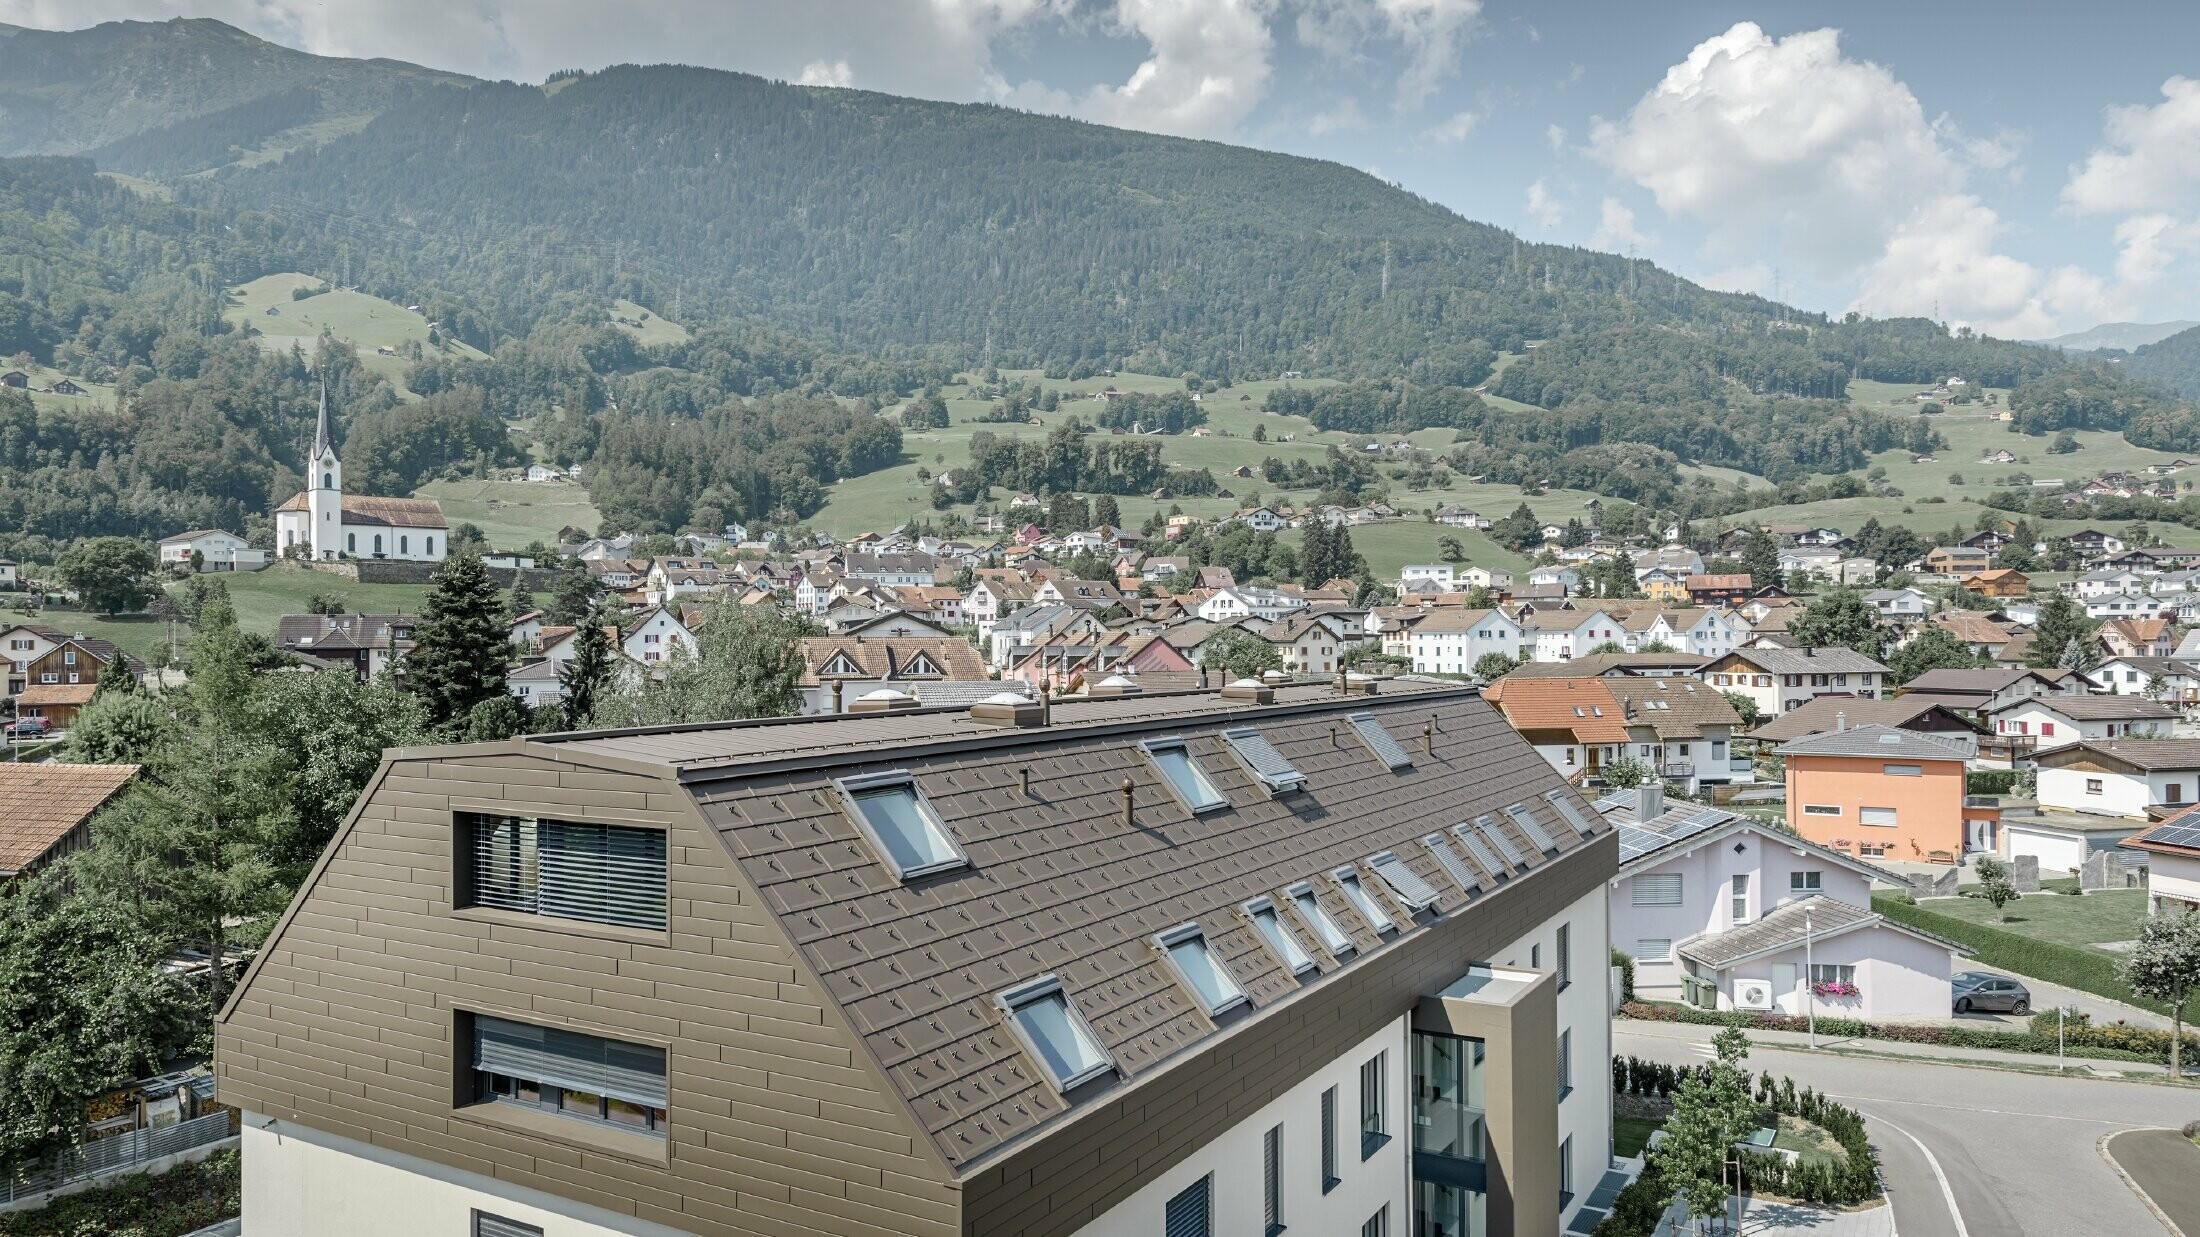 Dachgeschoßausbau des Wohnhauses in Wangs mit braunen Alu-Paneelen von PREFA für Dach und Fassade.